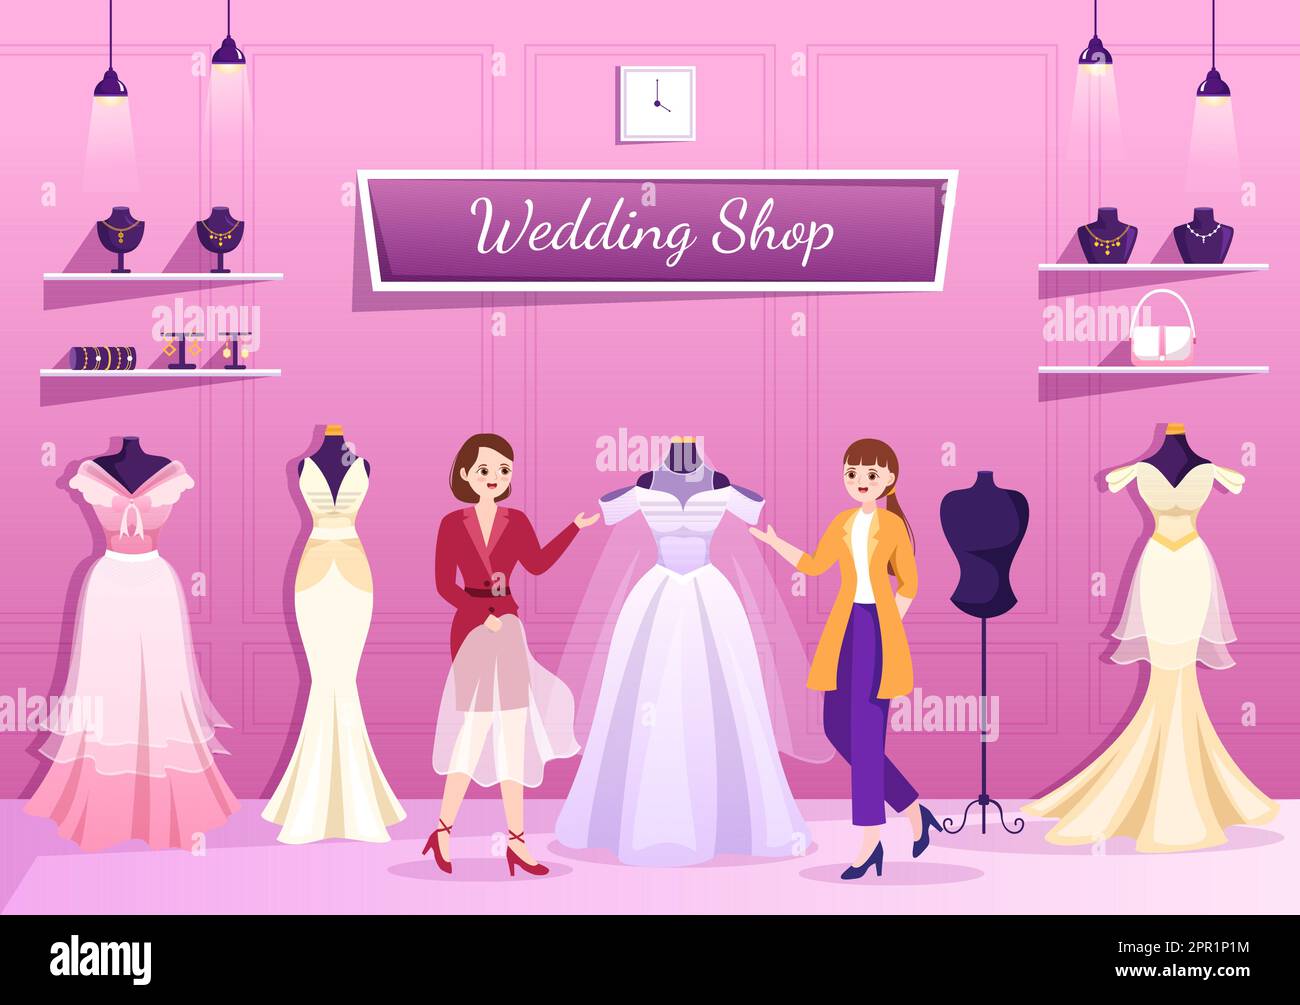 Boutique de mariage avec bijoux, belles robes de mariée et accessoires adaptés pour affiche en dessin main de dessin de dessin animé à la main Illustration de Vecteur